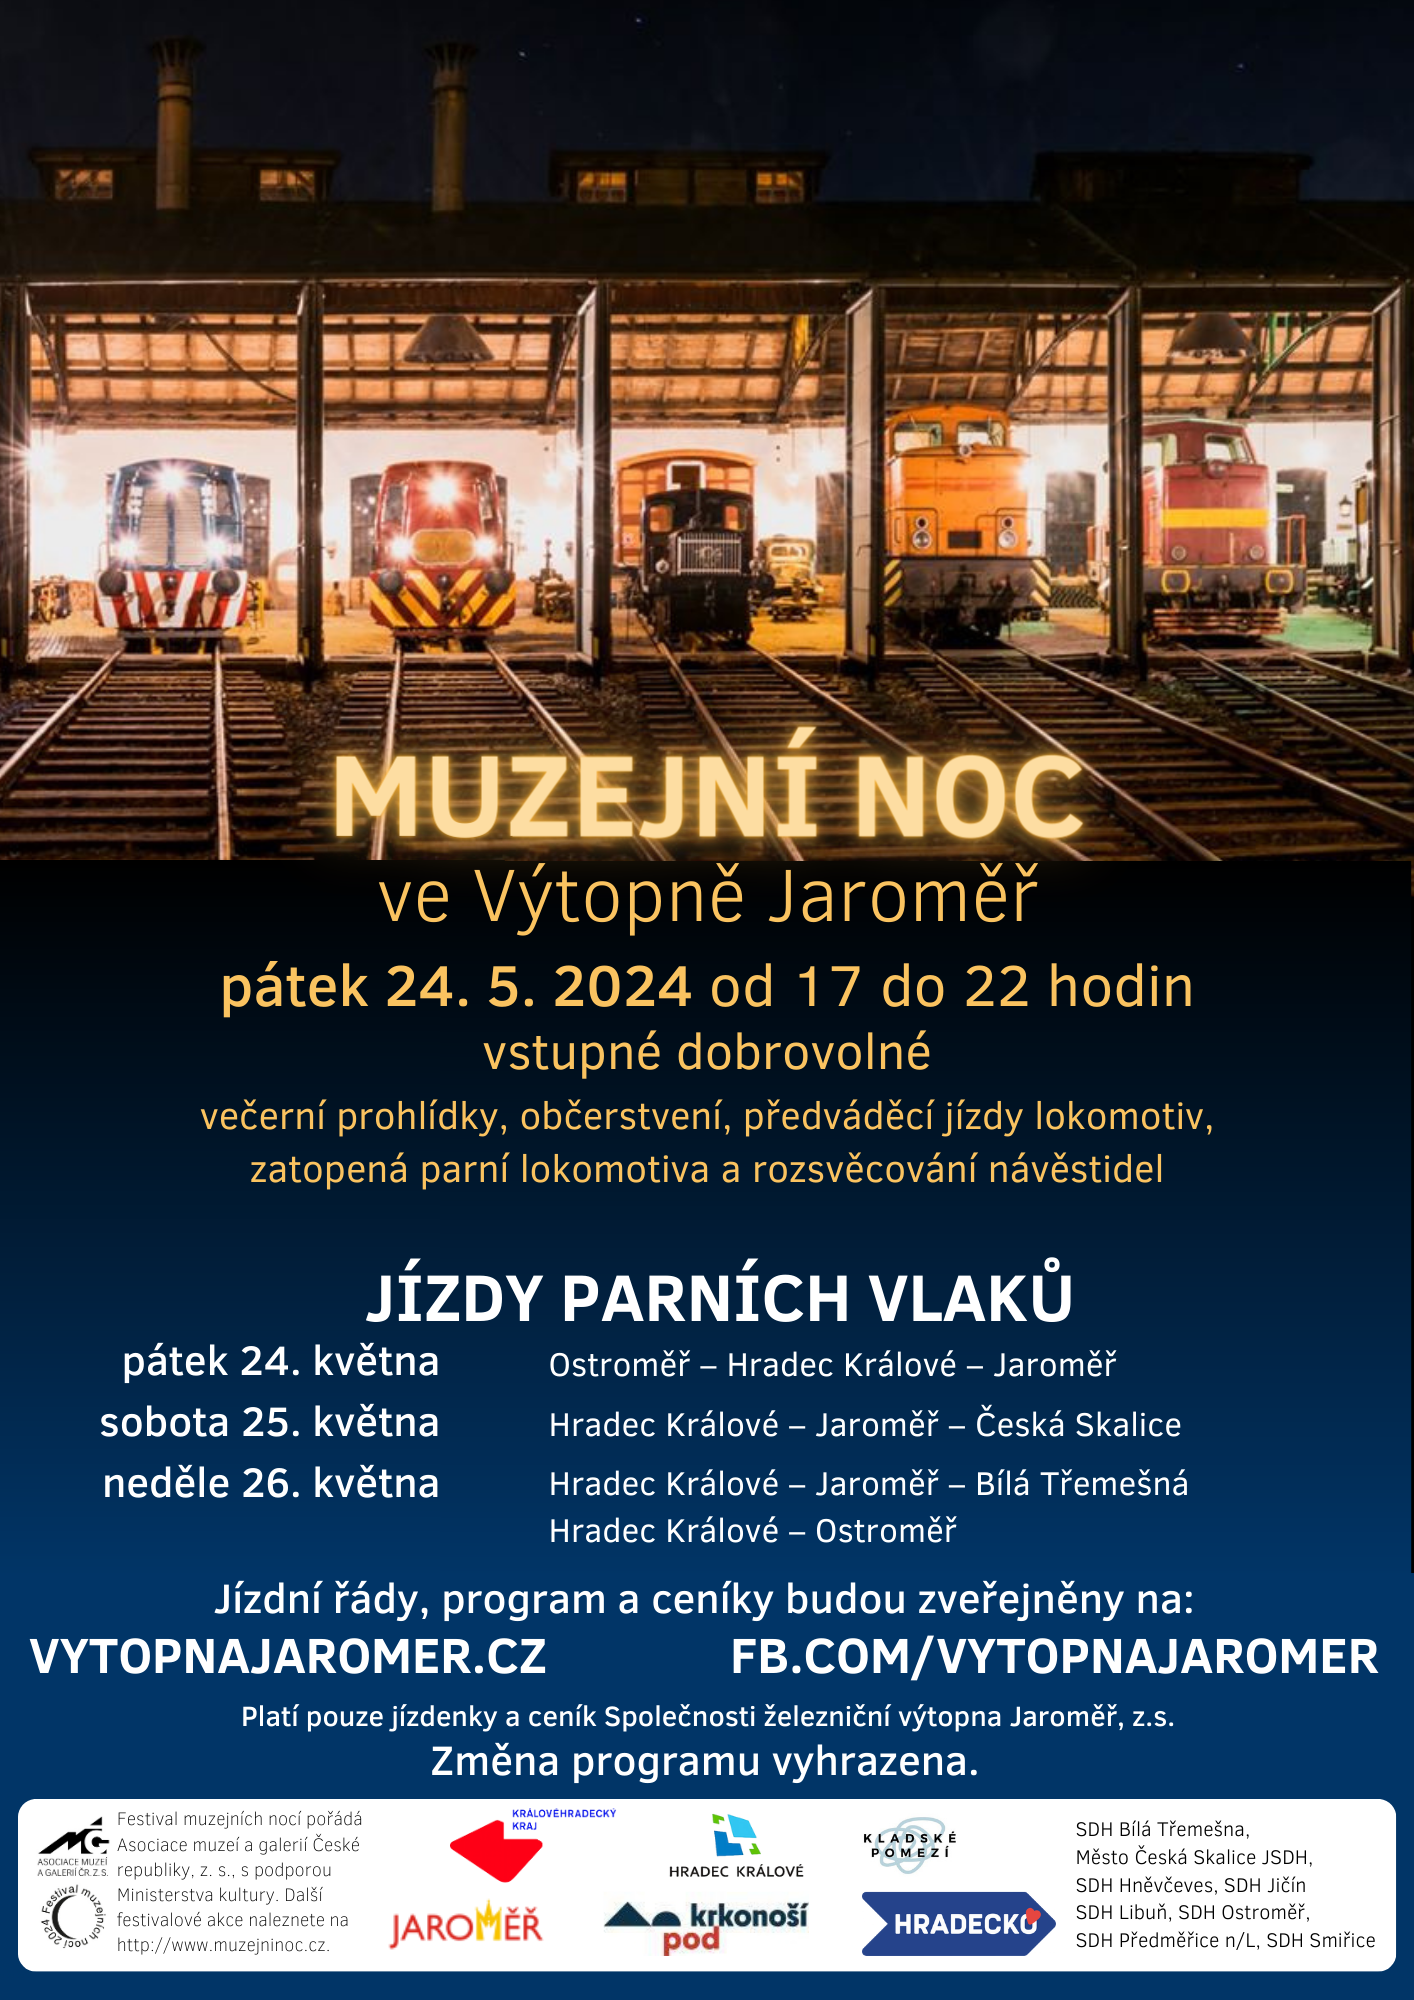 Muzejní noc a jízdy parních vlaků 2024